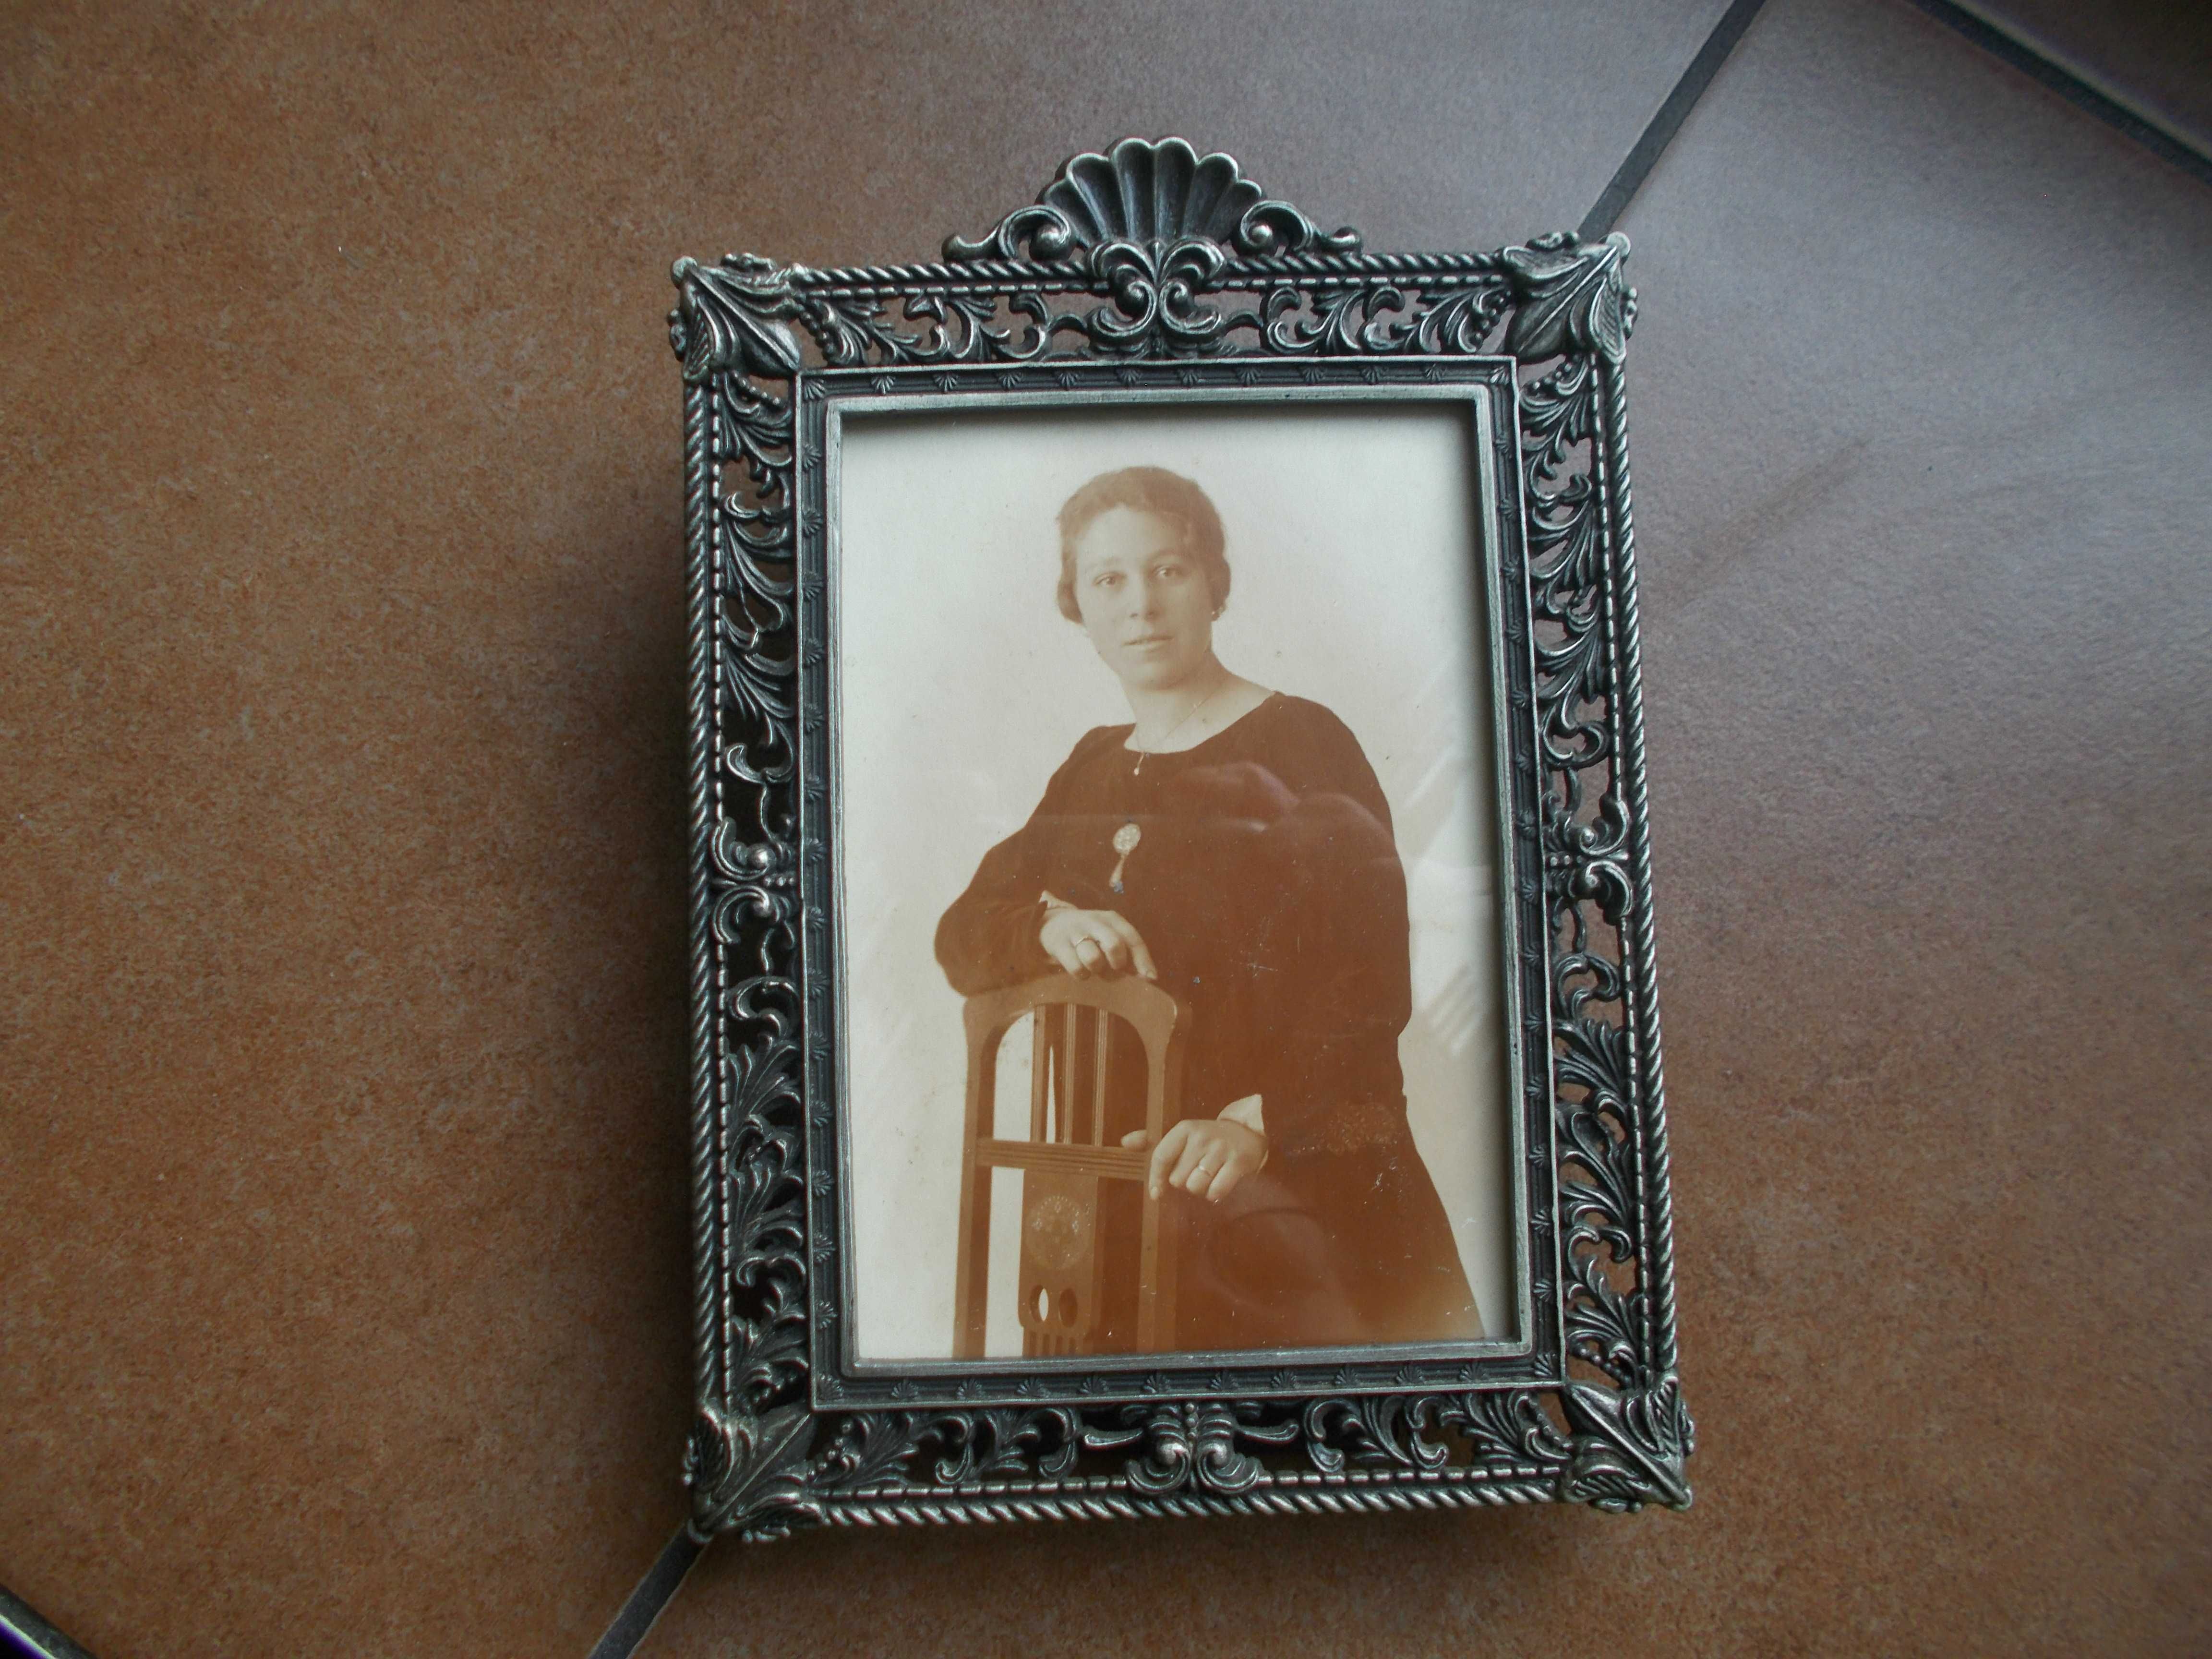 Starocie, zabytkowa fotografia w metalowej, koronkowej ramce za szkłem